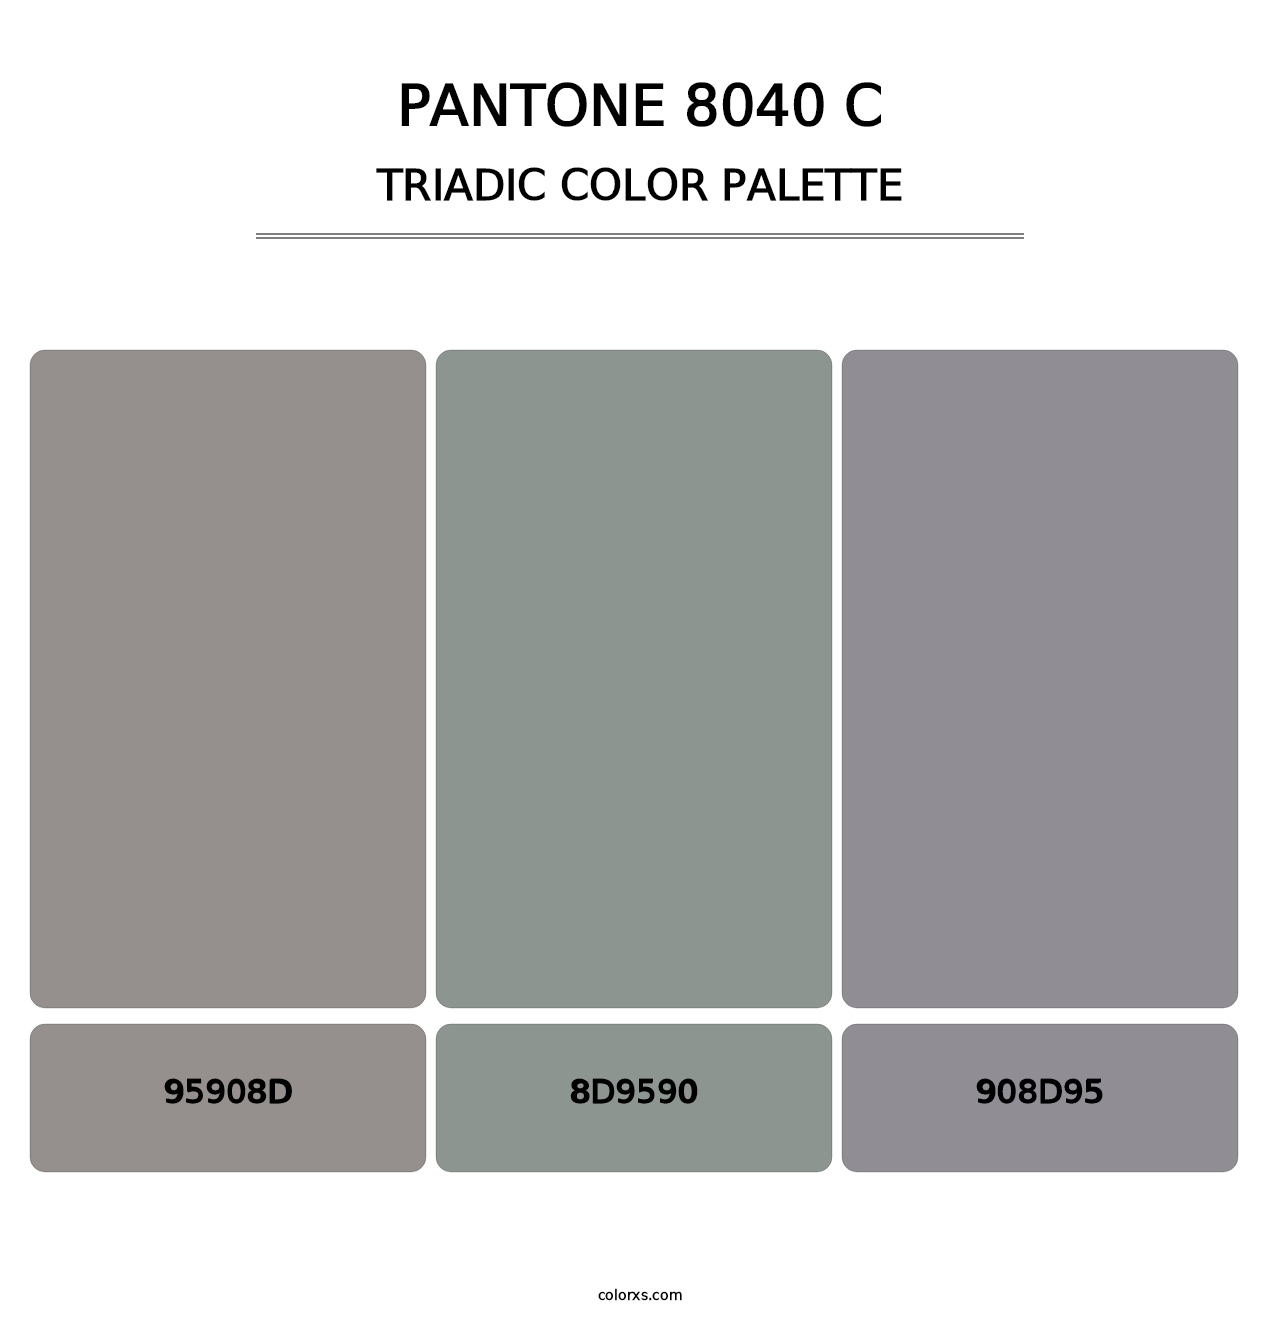 PANTONE 8040 C - Triadic Color Palette